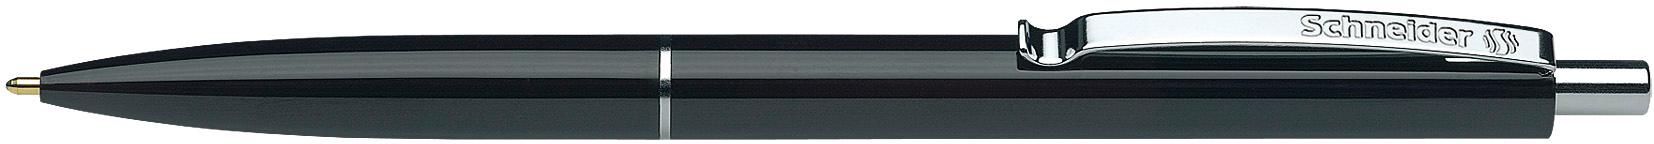 SCHNEIDER Kugelschreiber K15 JS 000574 001 OW schwarz, nachfüllbar schwarz, nachfüllbar